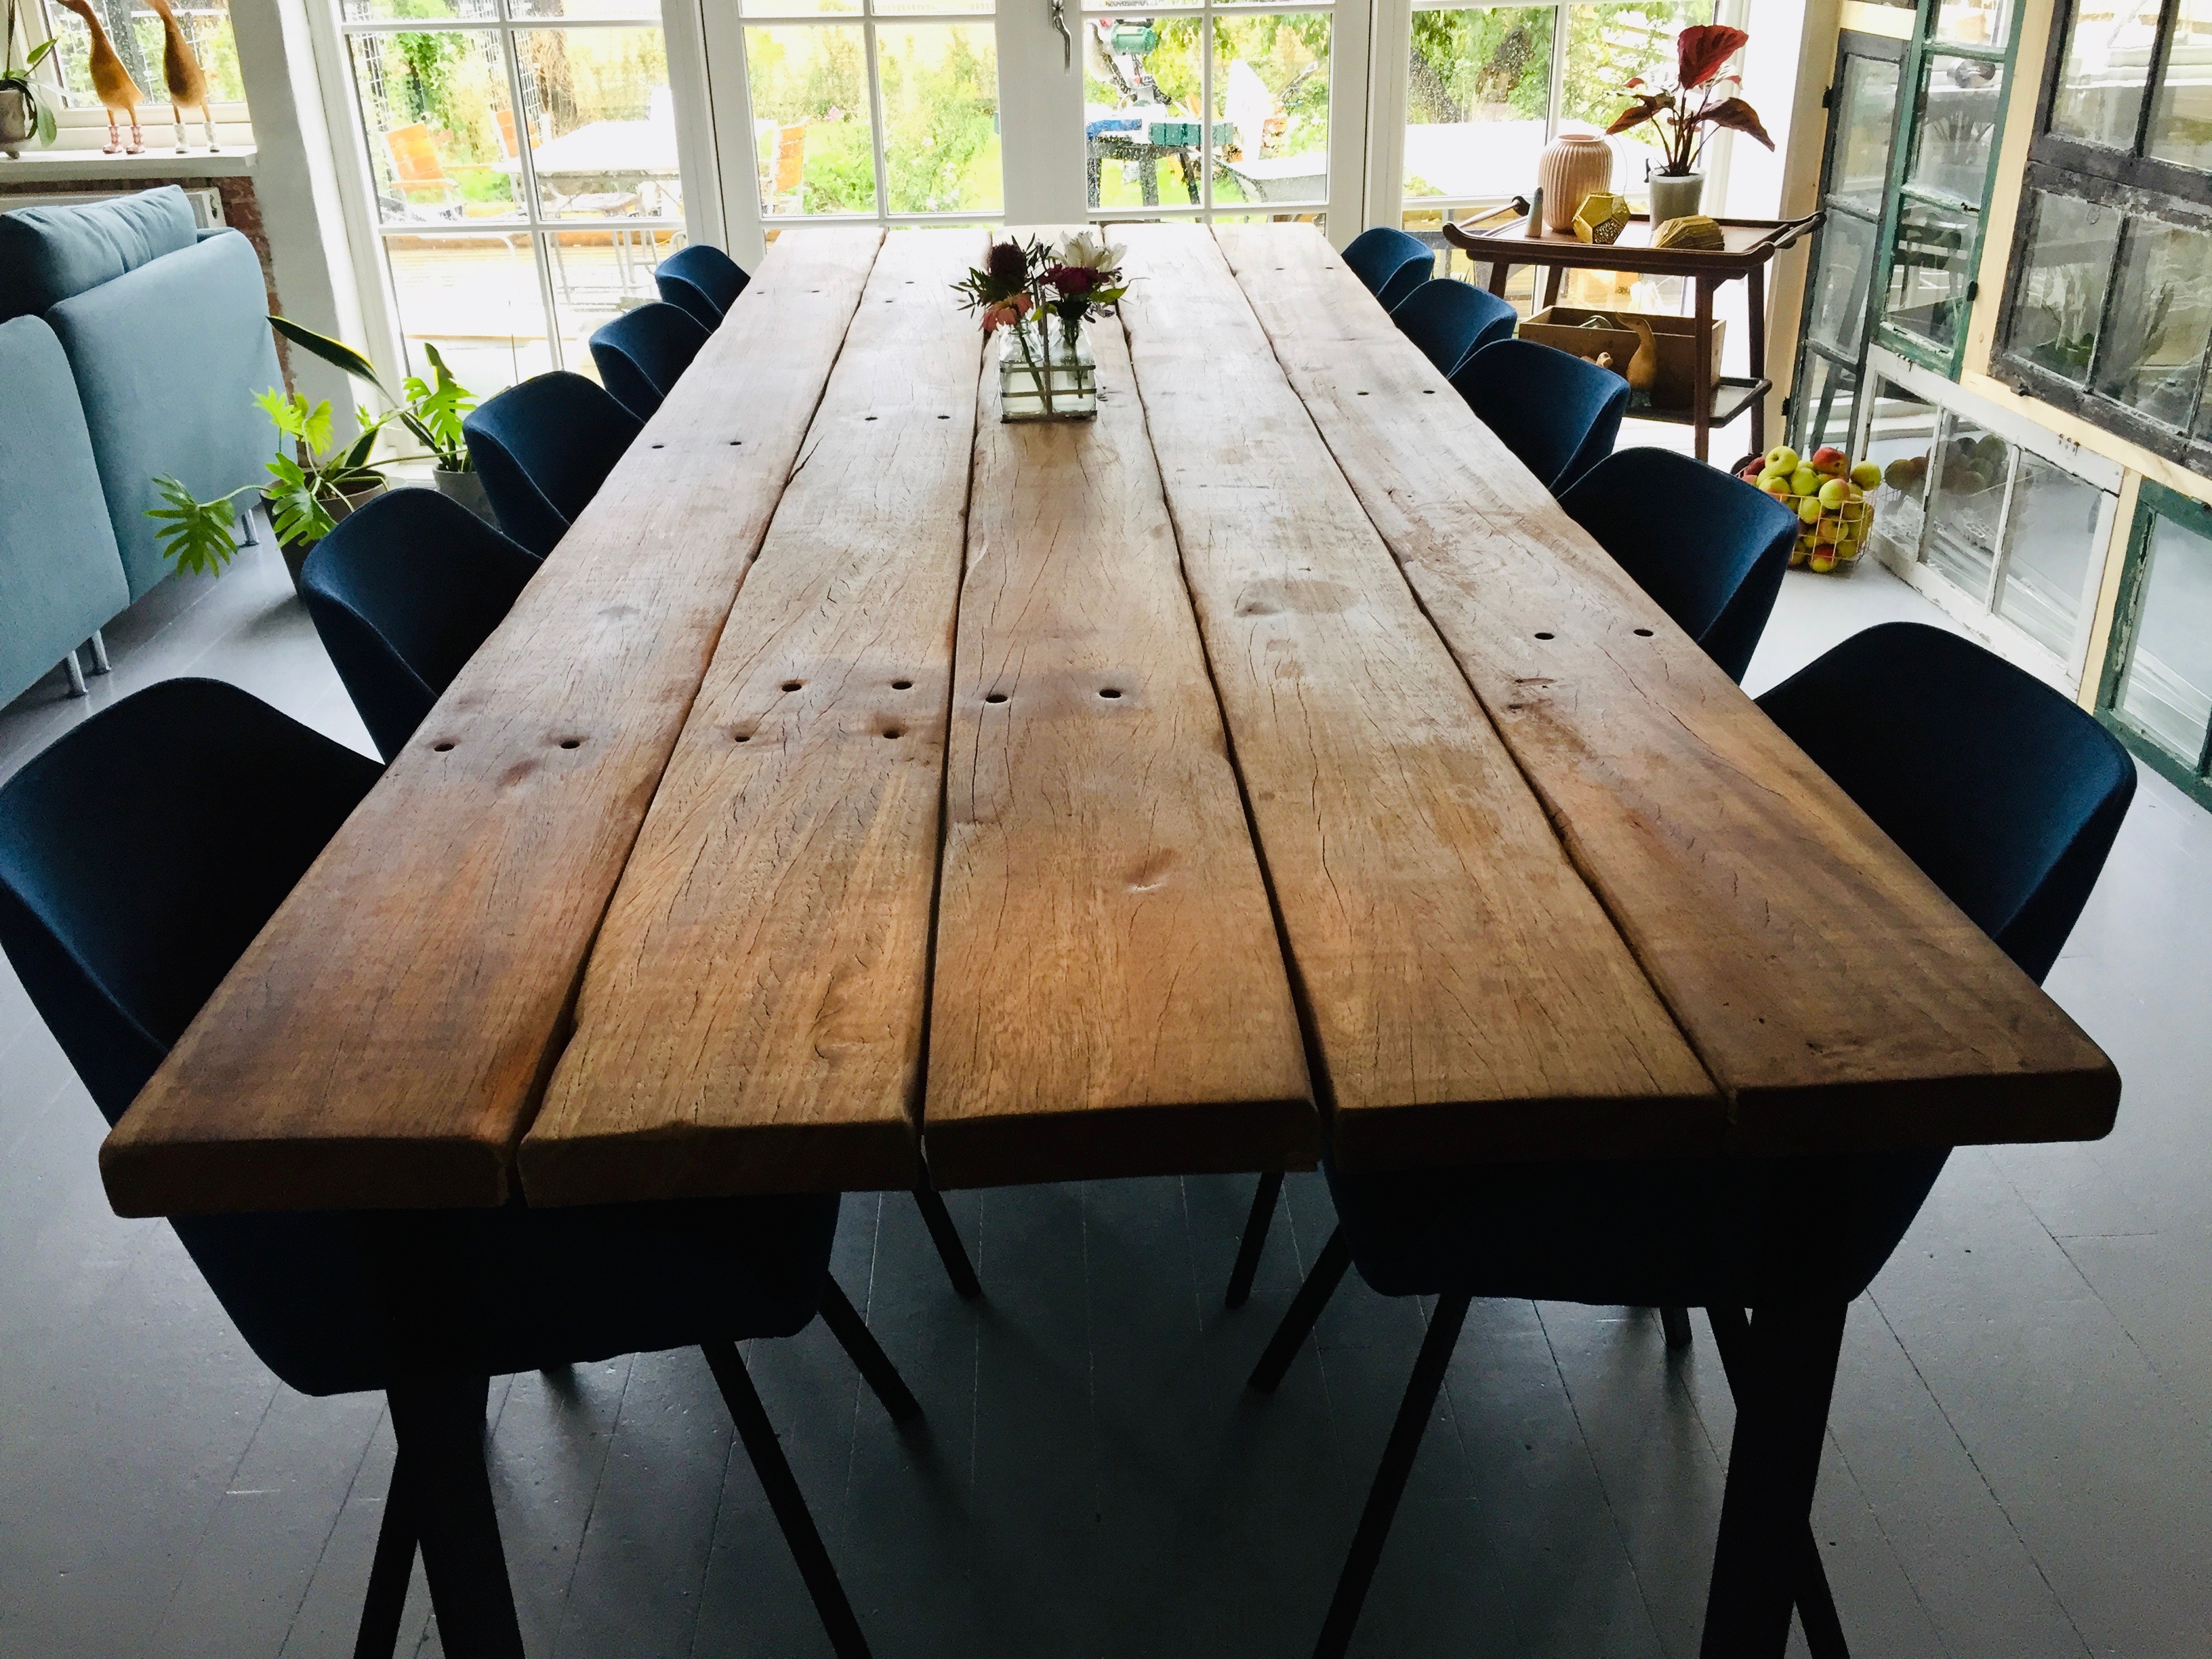 Wedge Brug for Lav en snemand bord odense, træbord, planke bord træ - LINDEQUIST-DESIGN - Håndlavede  møbler